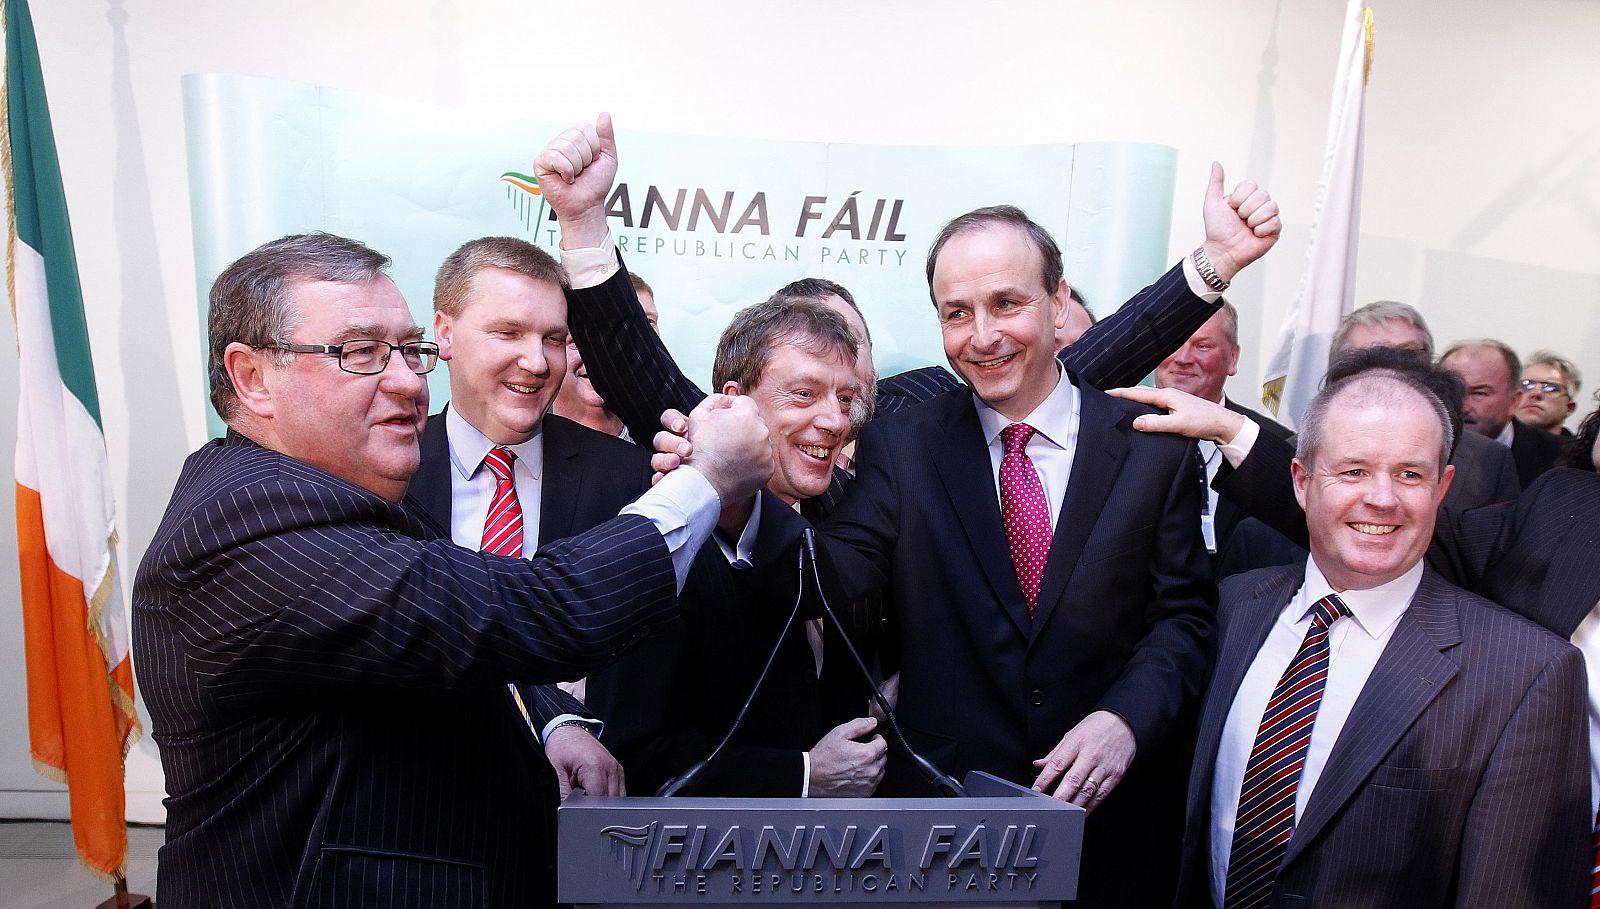 El exministro de Asuntos Exteriores, Micheal Martin, es felicitado por sus colegas de partido, tras ser elegido el nuevo líder del partido gobernante Fianna Fail.